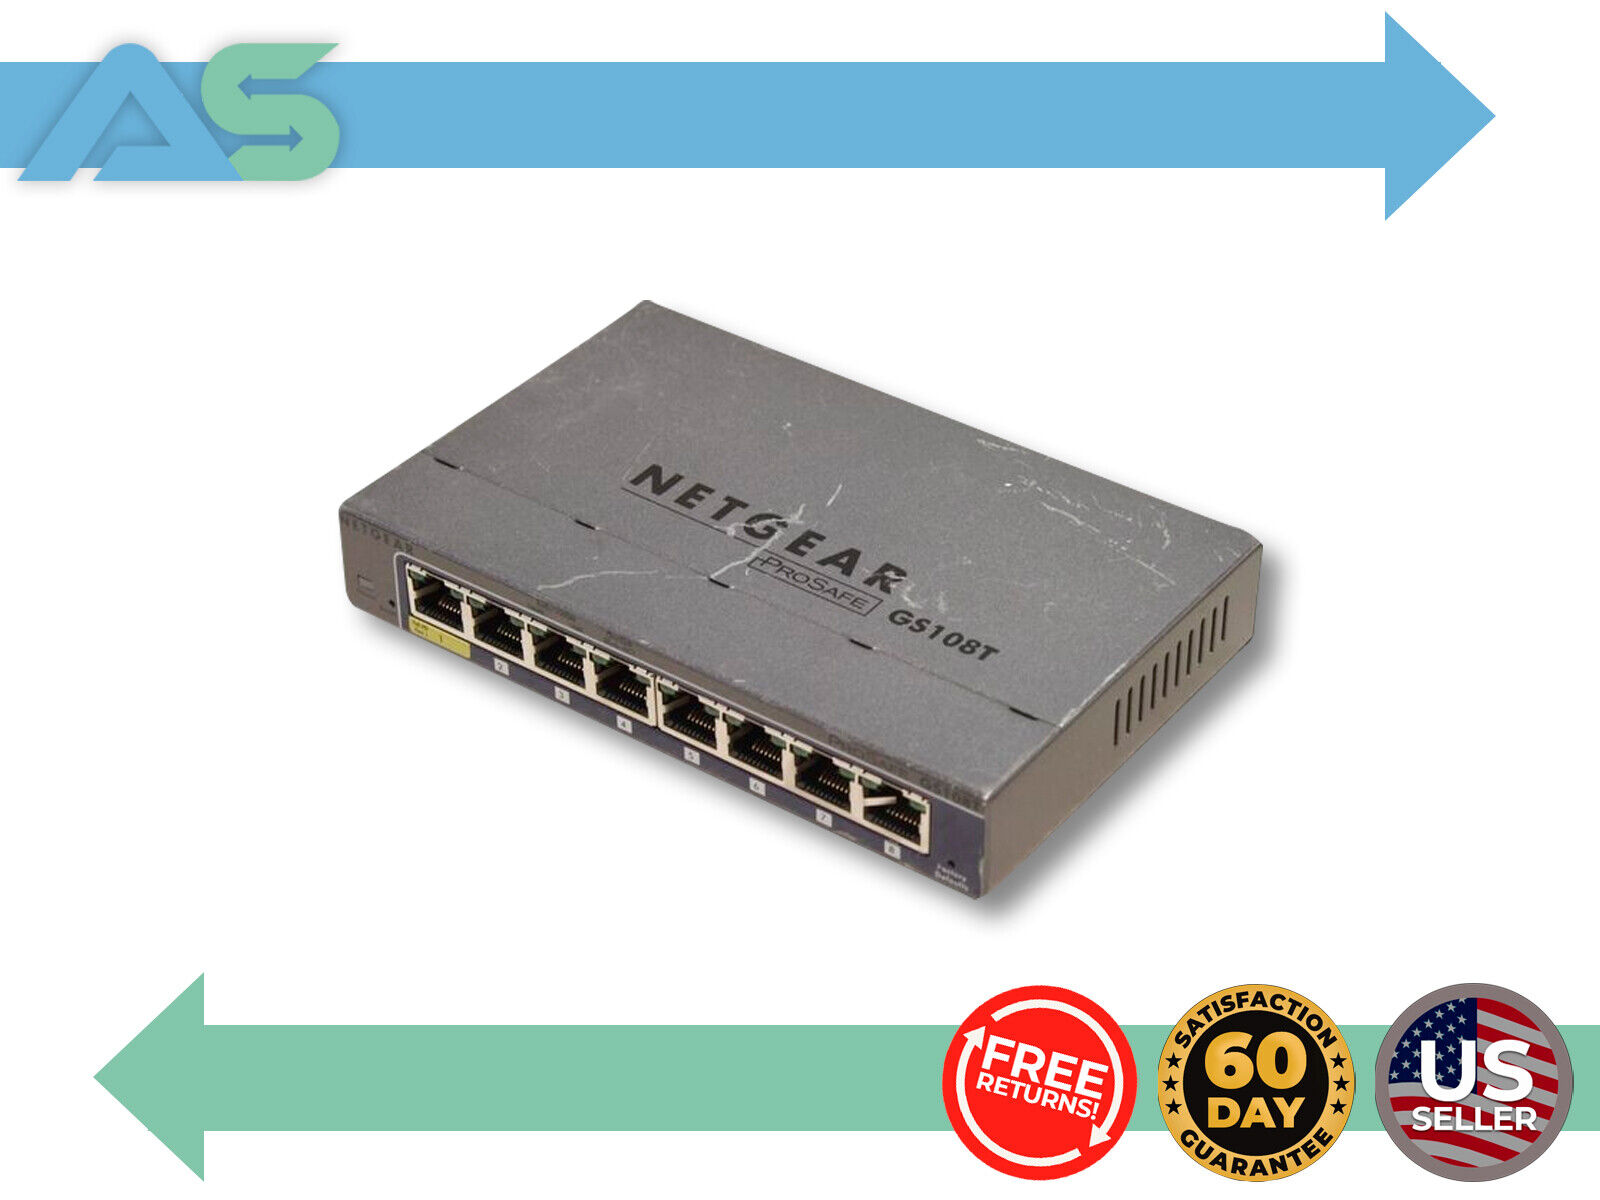 NETGEAR ProSafe GS108Tv2 GS108T Smart Switch 8-Port Gigabit (No Adapter)